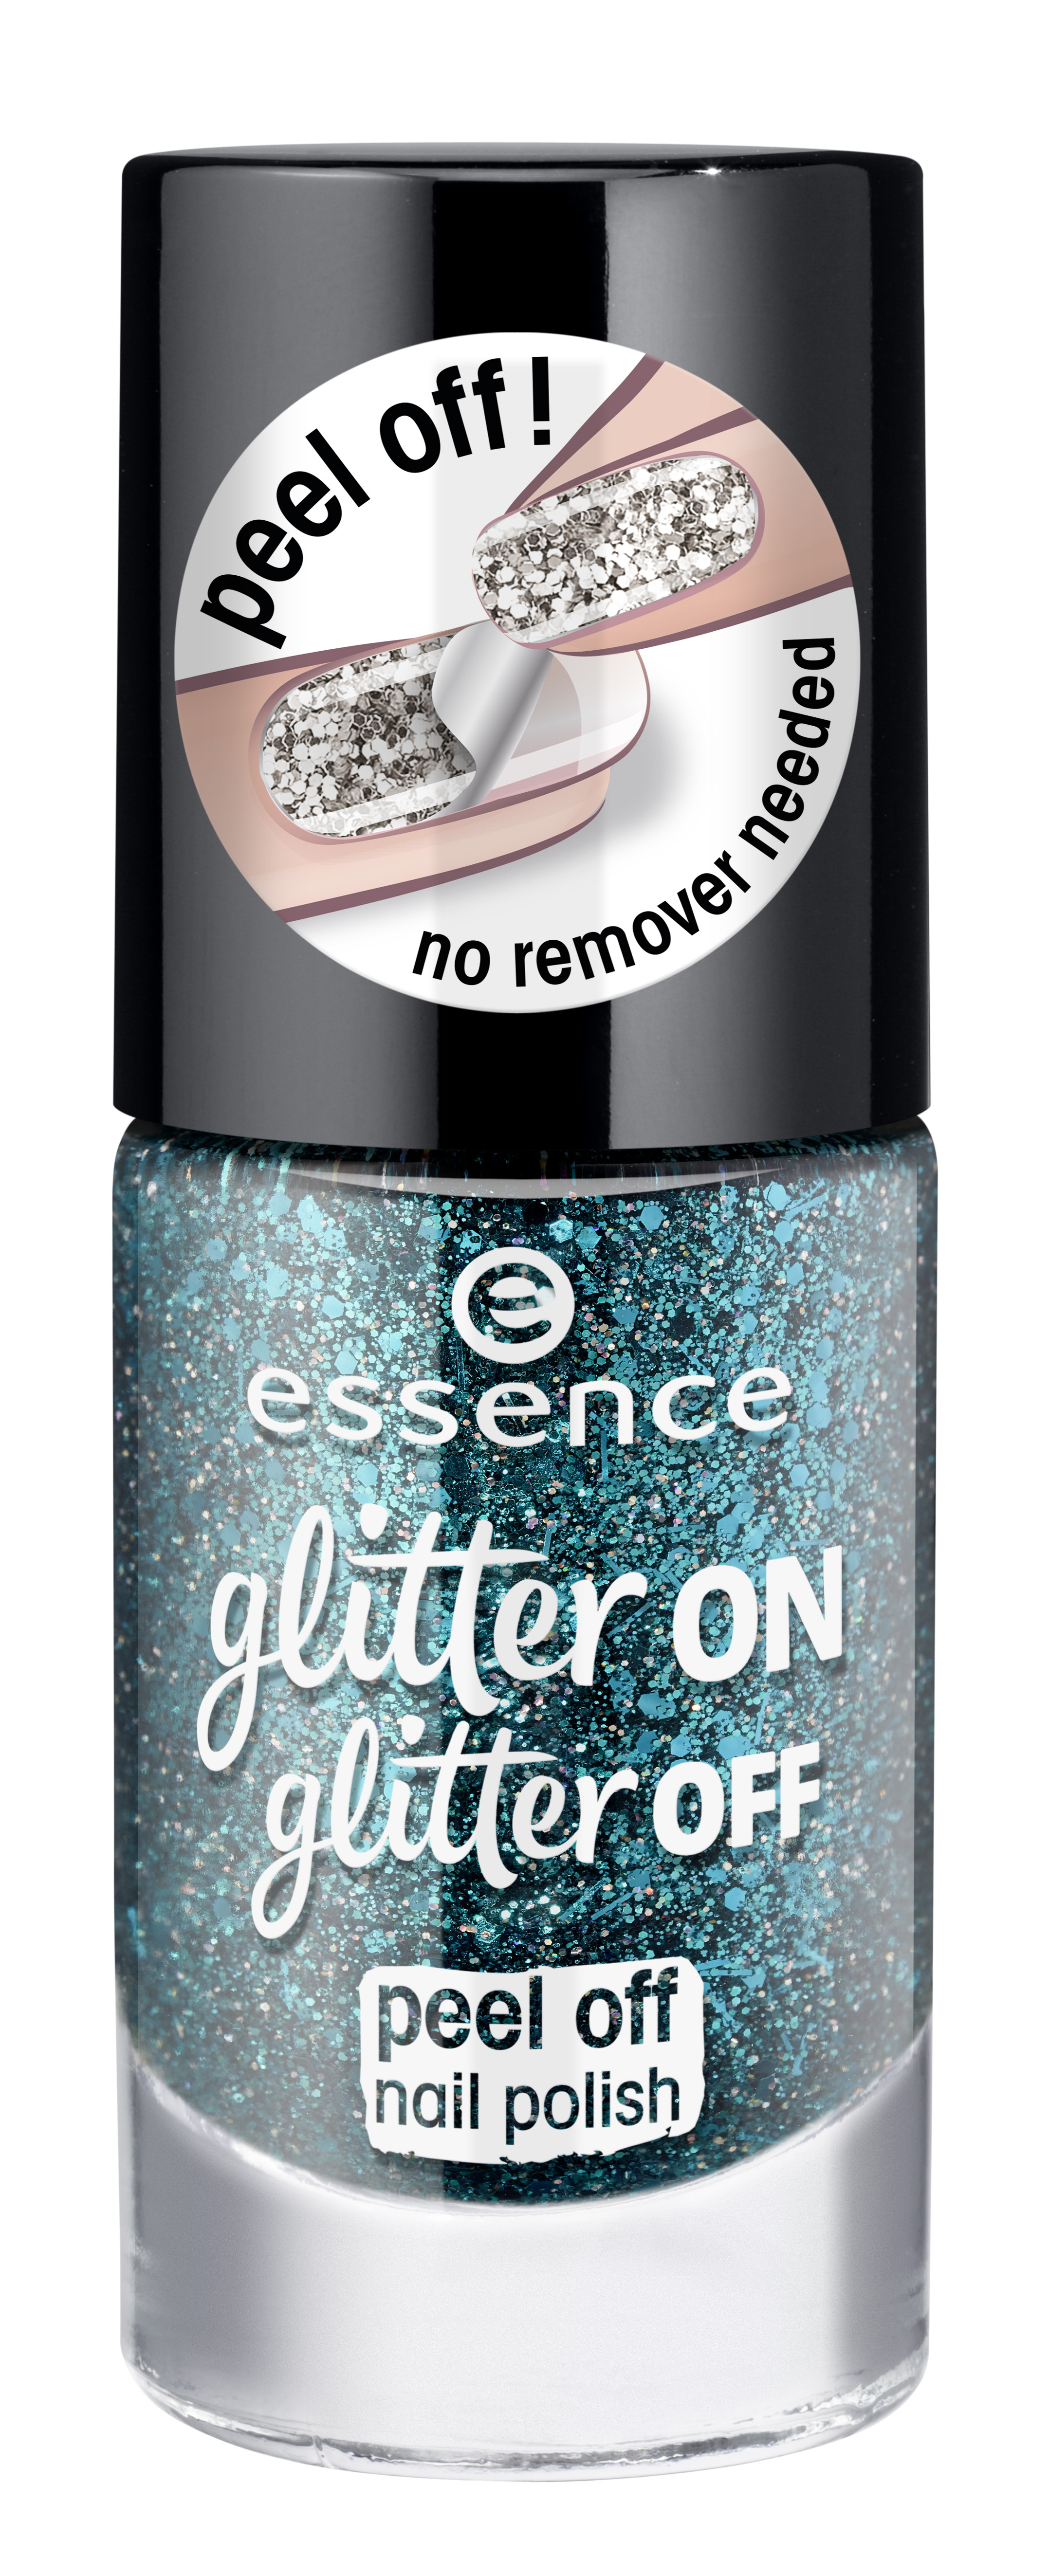 ess. glitter on glitter off peel off nail polish 06